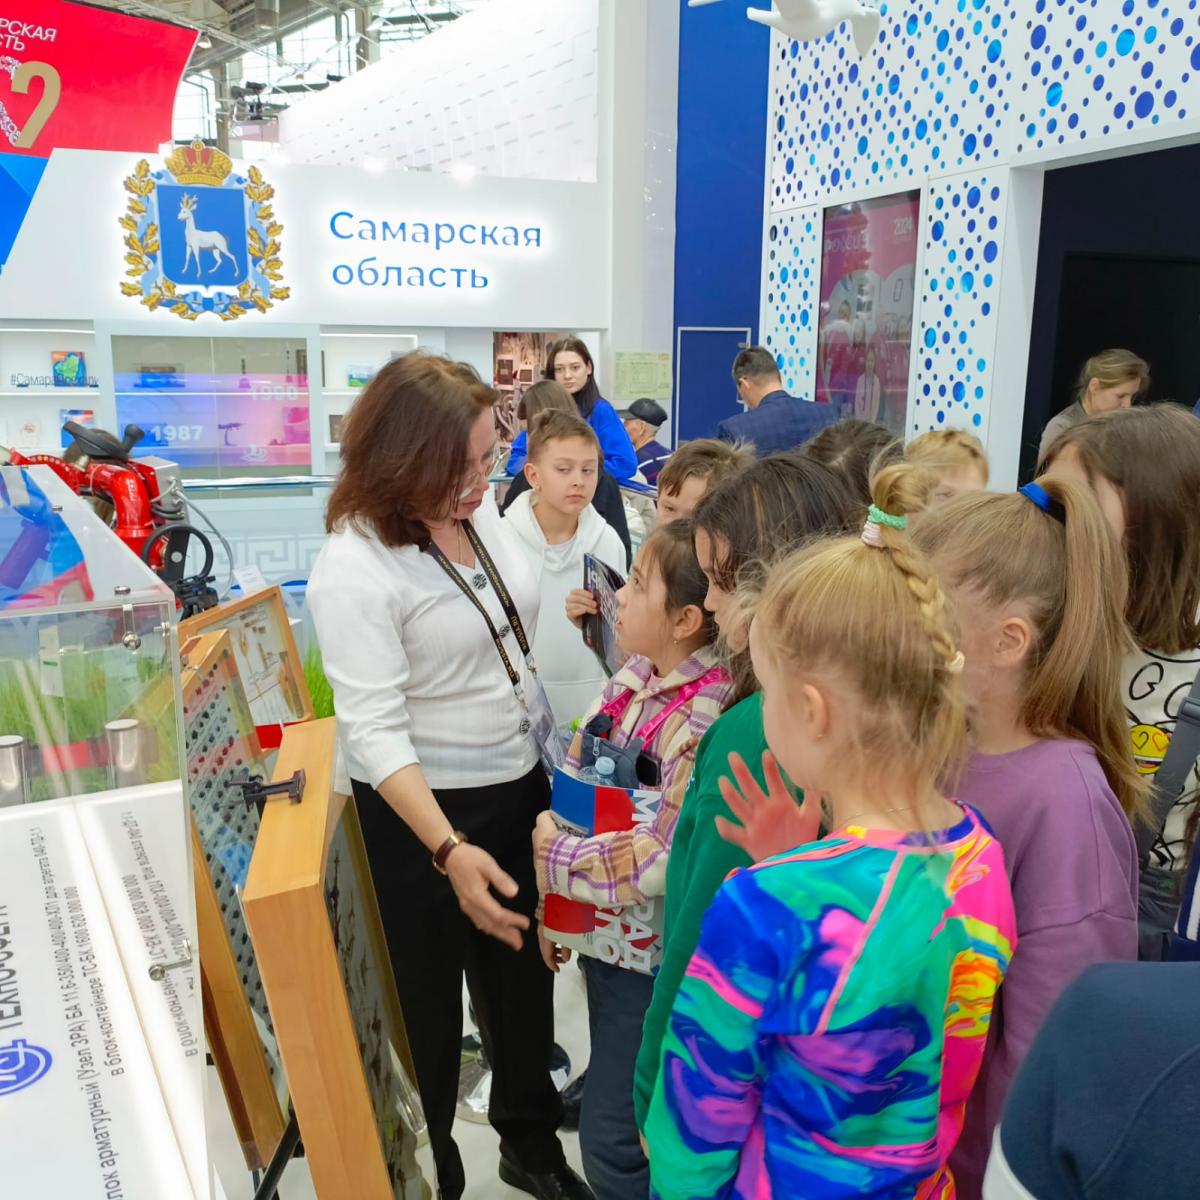 День сельского хозяйства  на Международной выставке-форуме «Россия» в г. Москва Фото 1